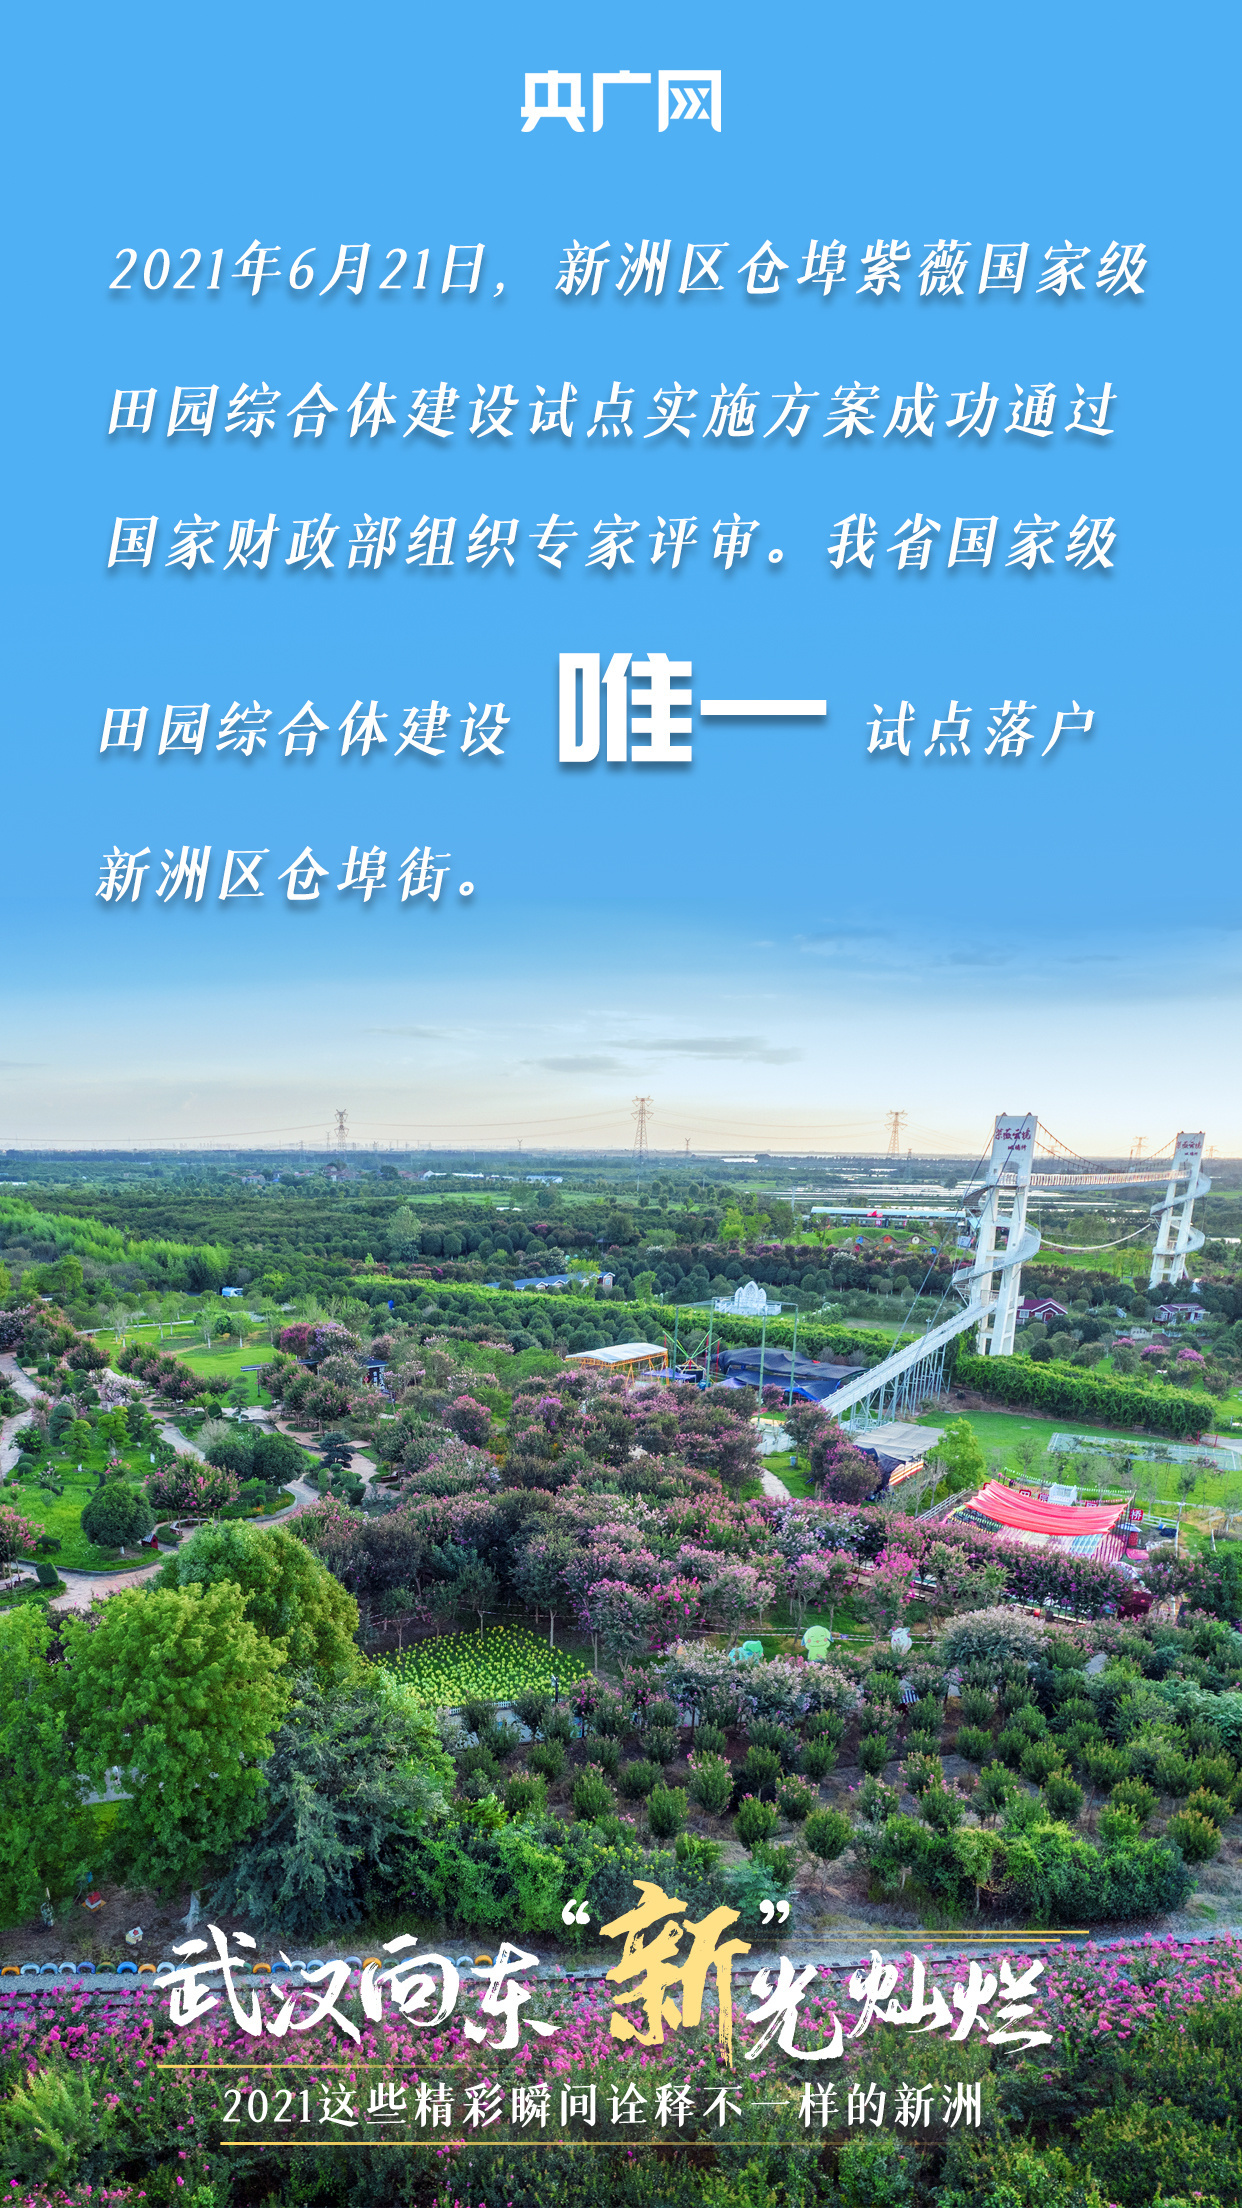 《【恒达登陆注册】武汉向东 “新”光灿烂 2021这些精彩瞬间诠释不一样的新洲》